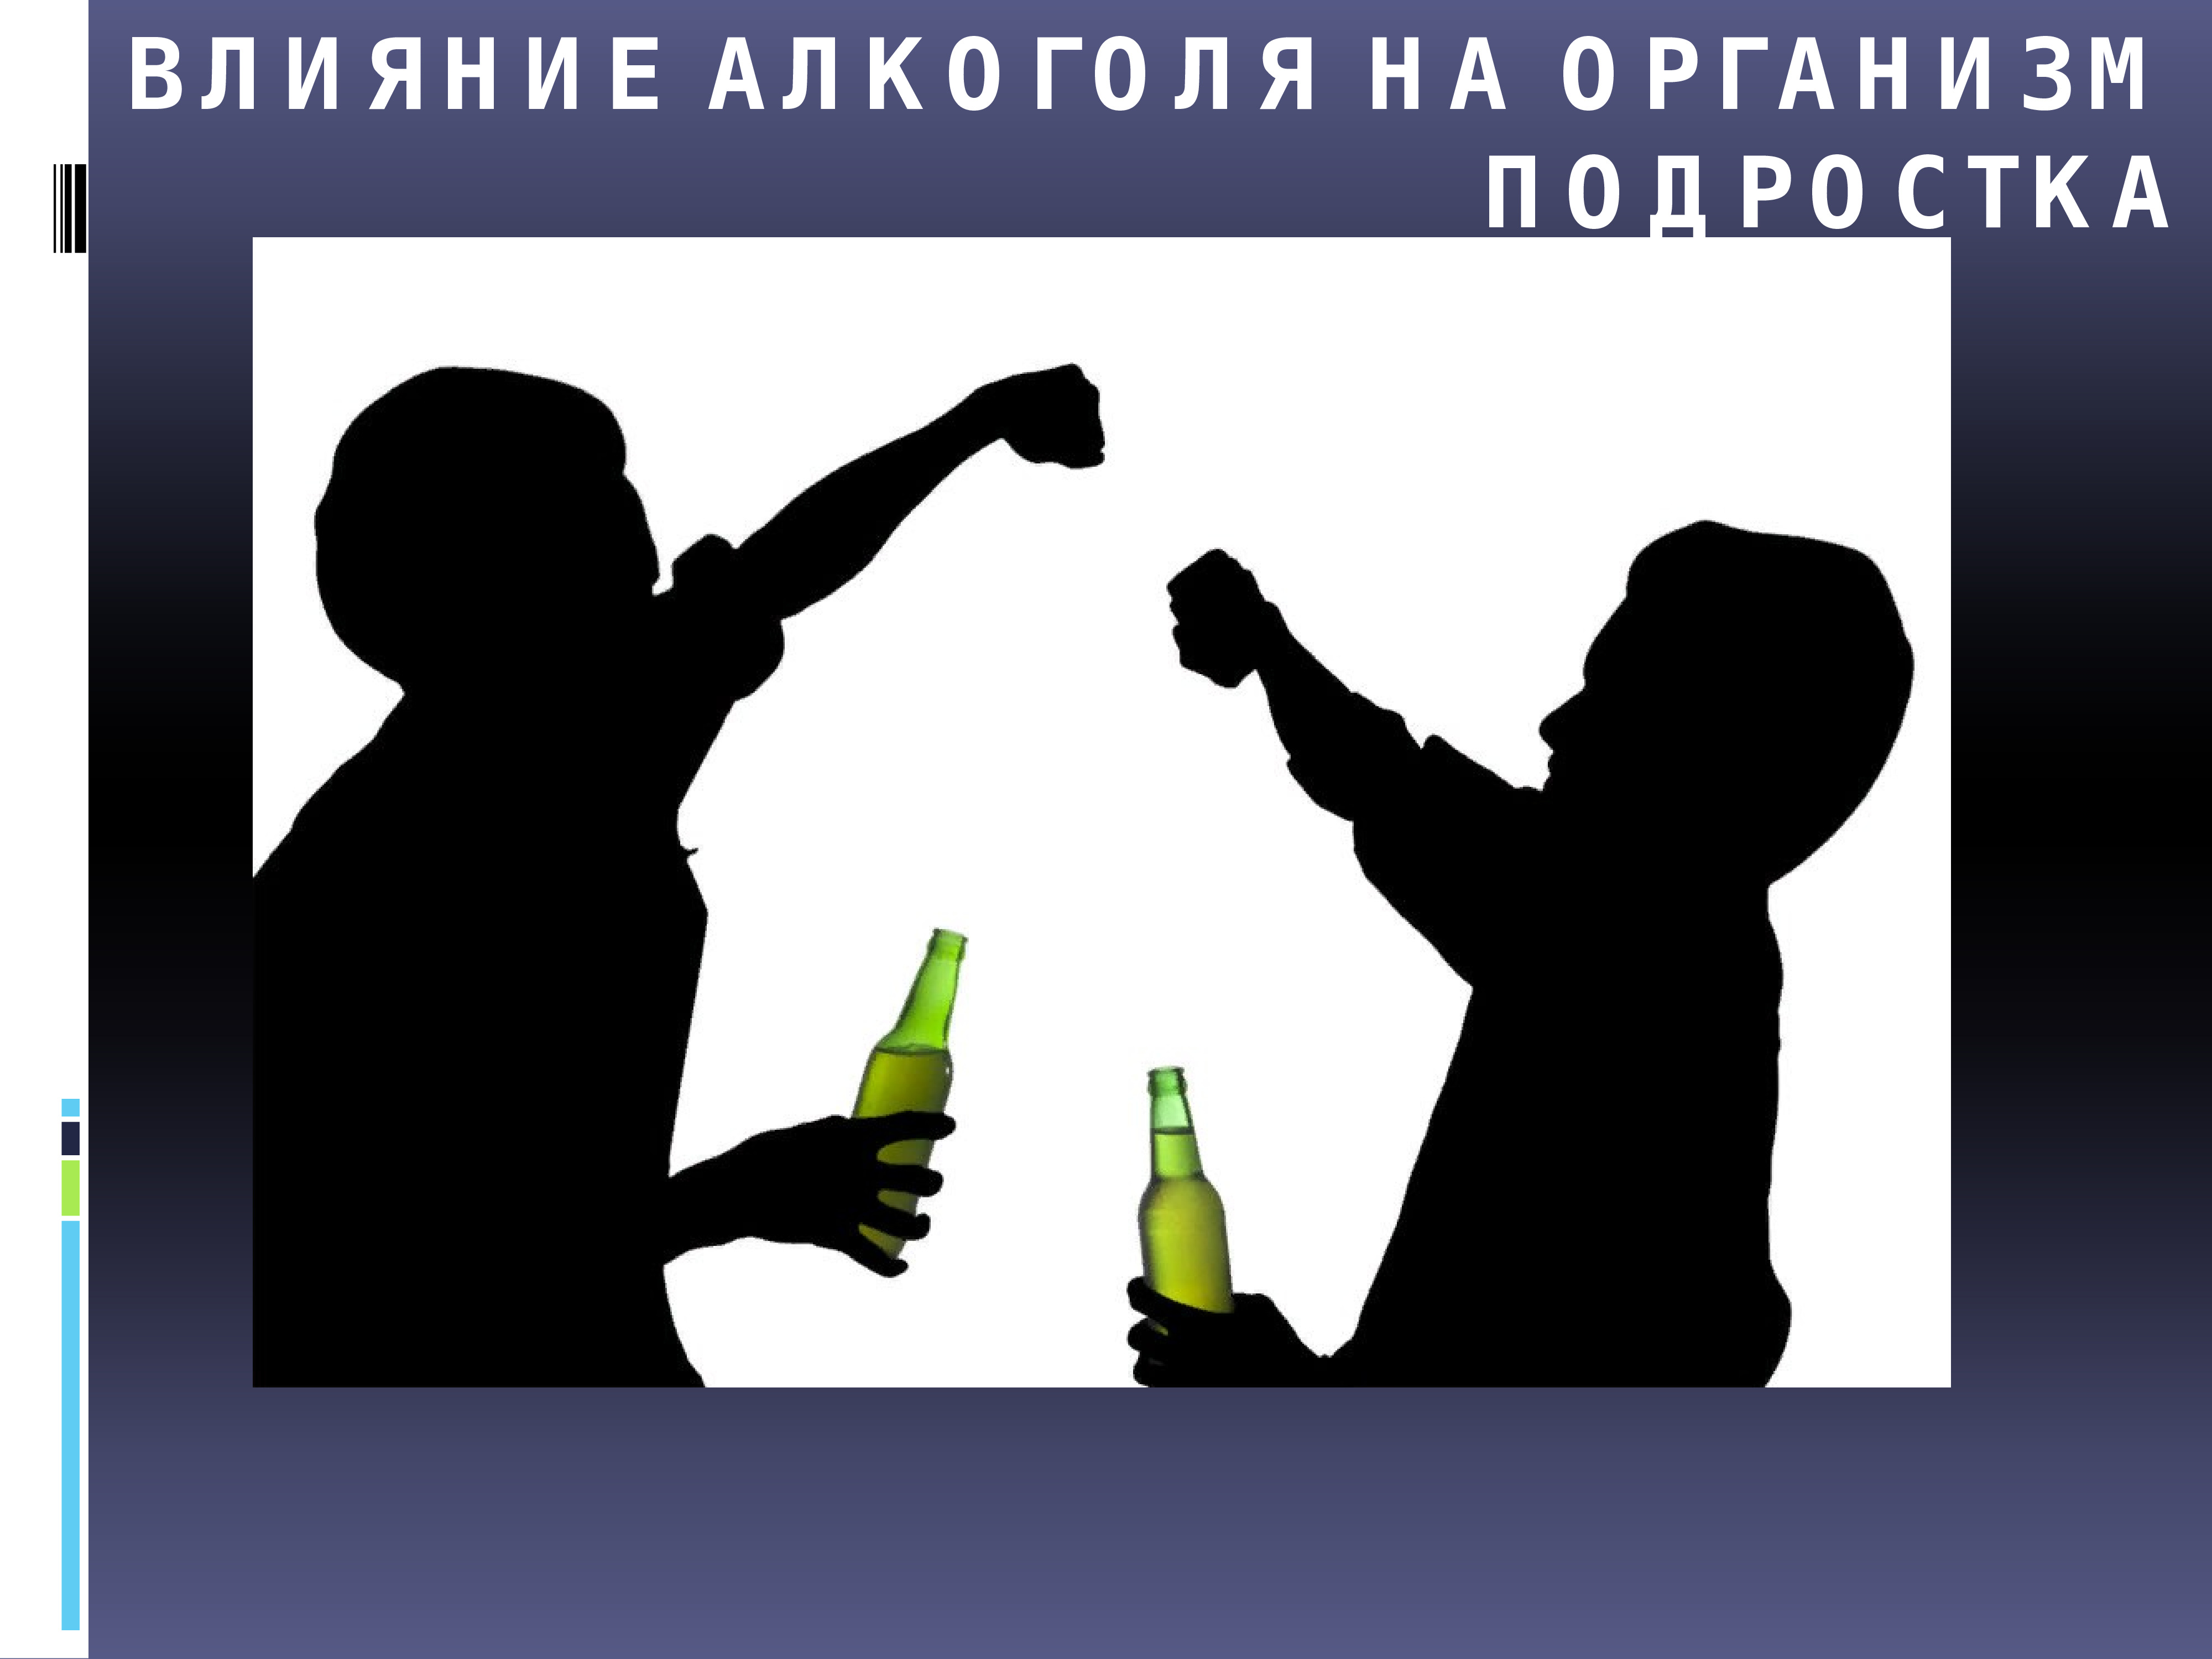 Алкогольный проект. Влияние алкоголизма на организм подростка.